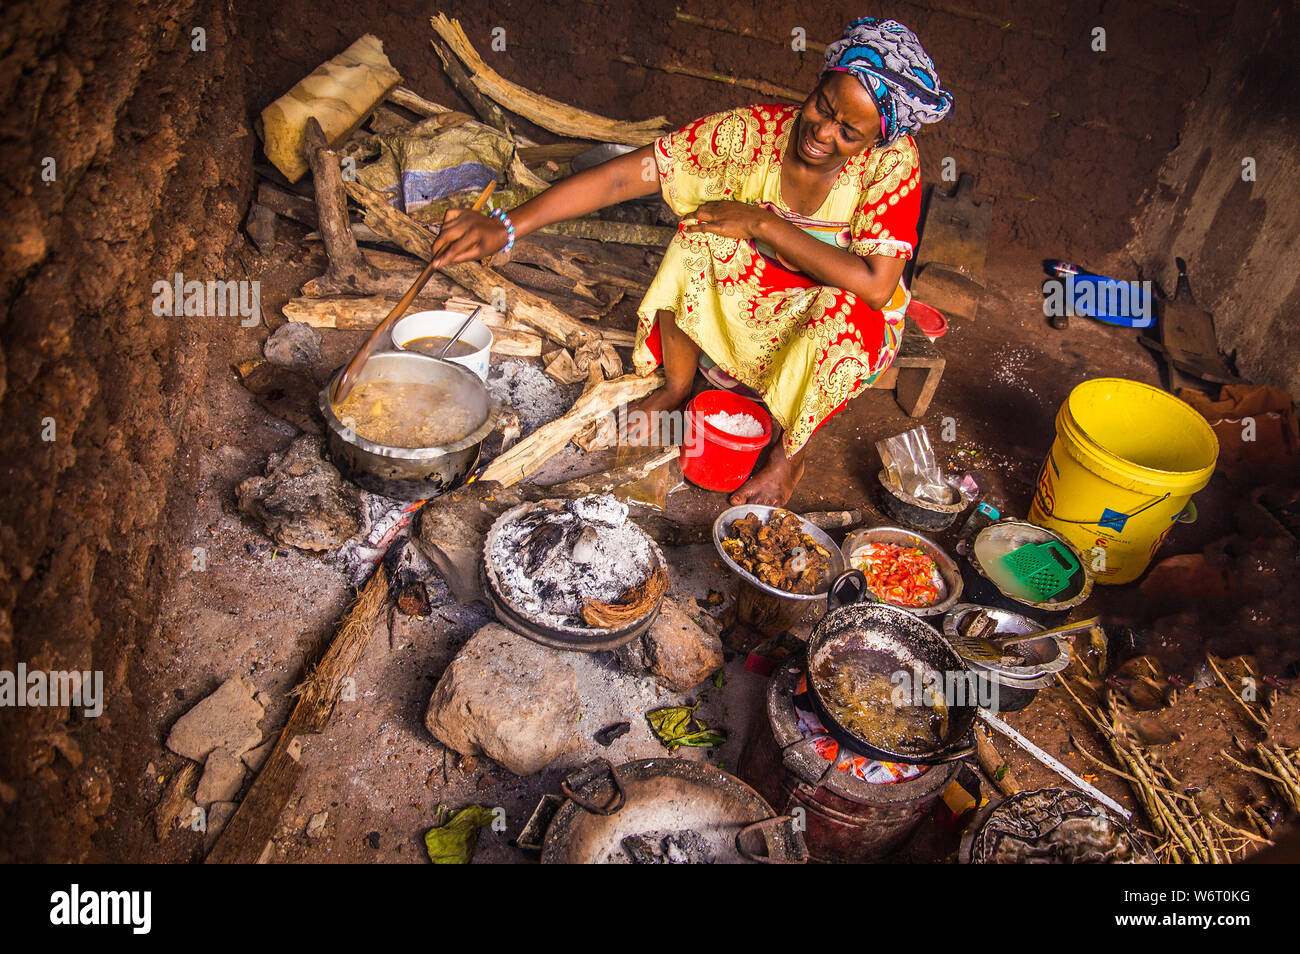 Zanzibar, Tanzanie, le 29 mars, 2018 une femme africaine dans les vêtements nationaux cuisiniers un simple repas national dans un vieux plat sale dans une cabane sur un sol en terre cuite Banque D'Images